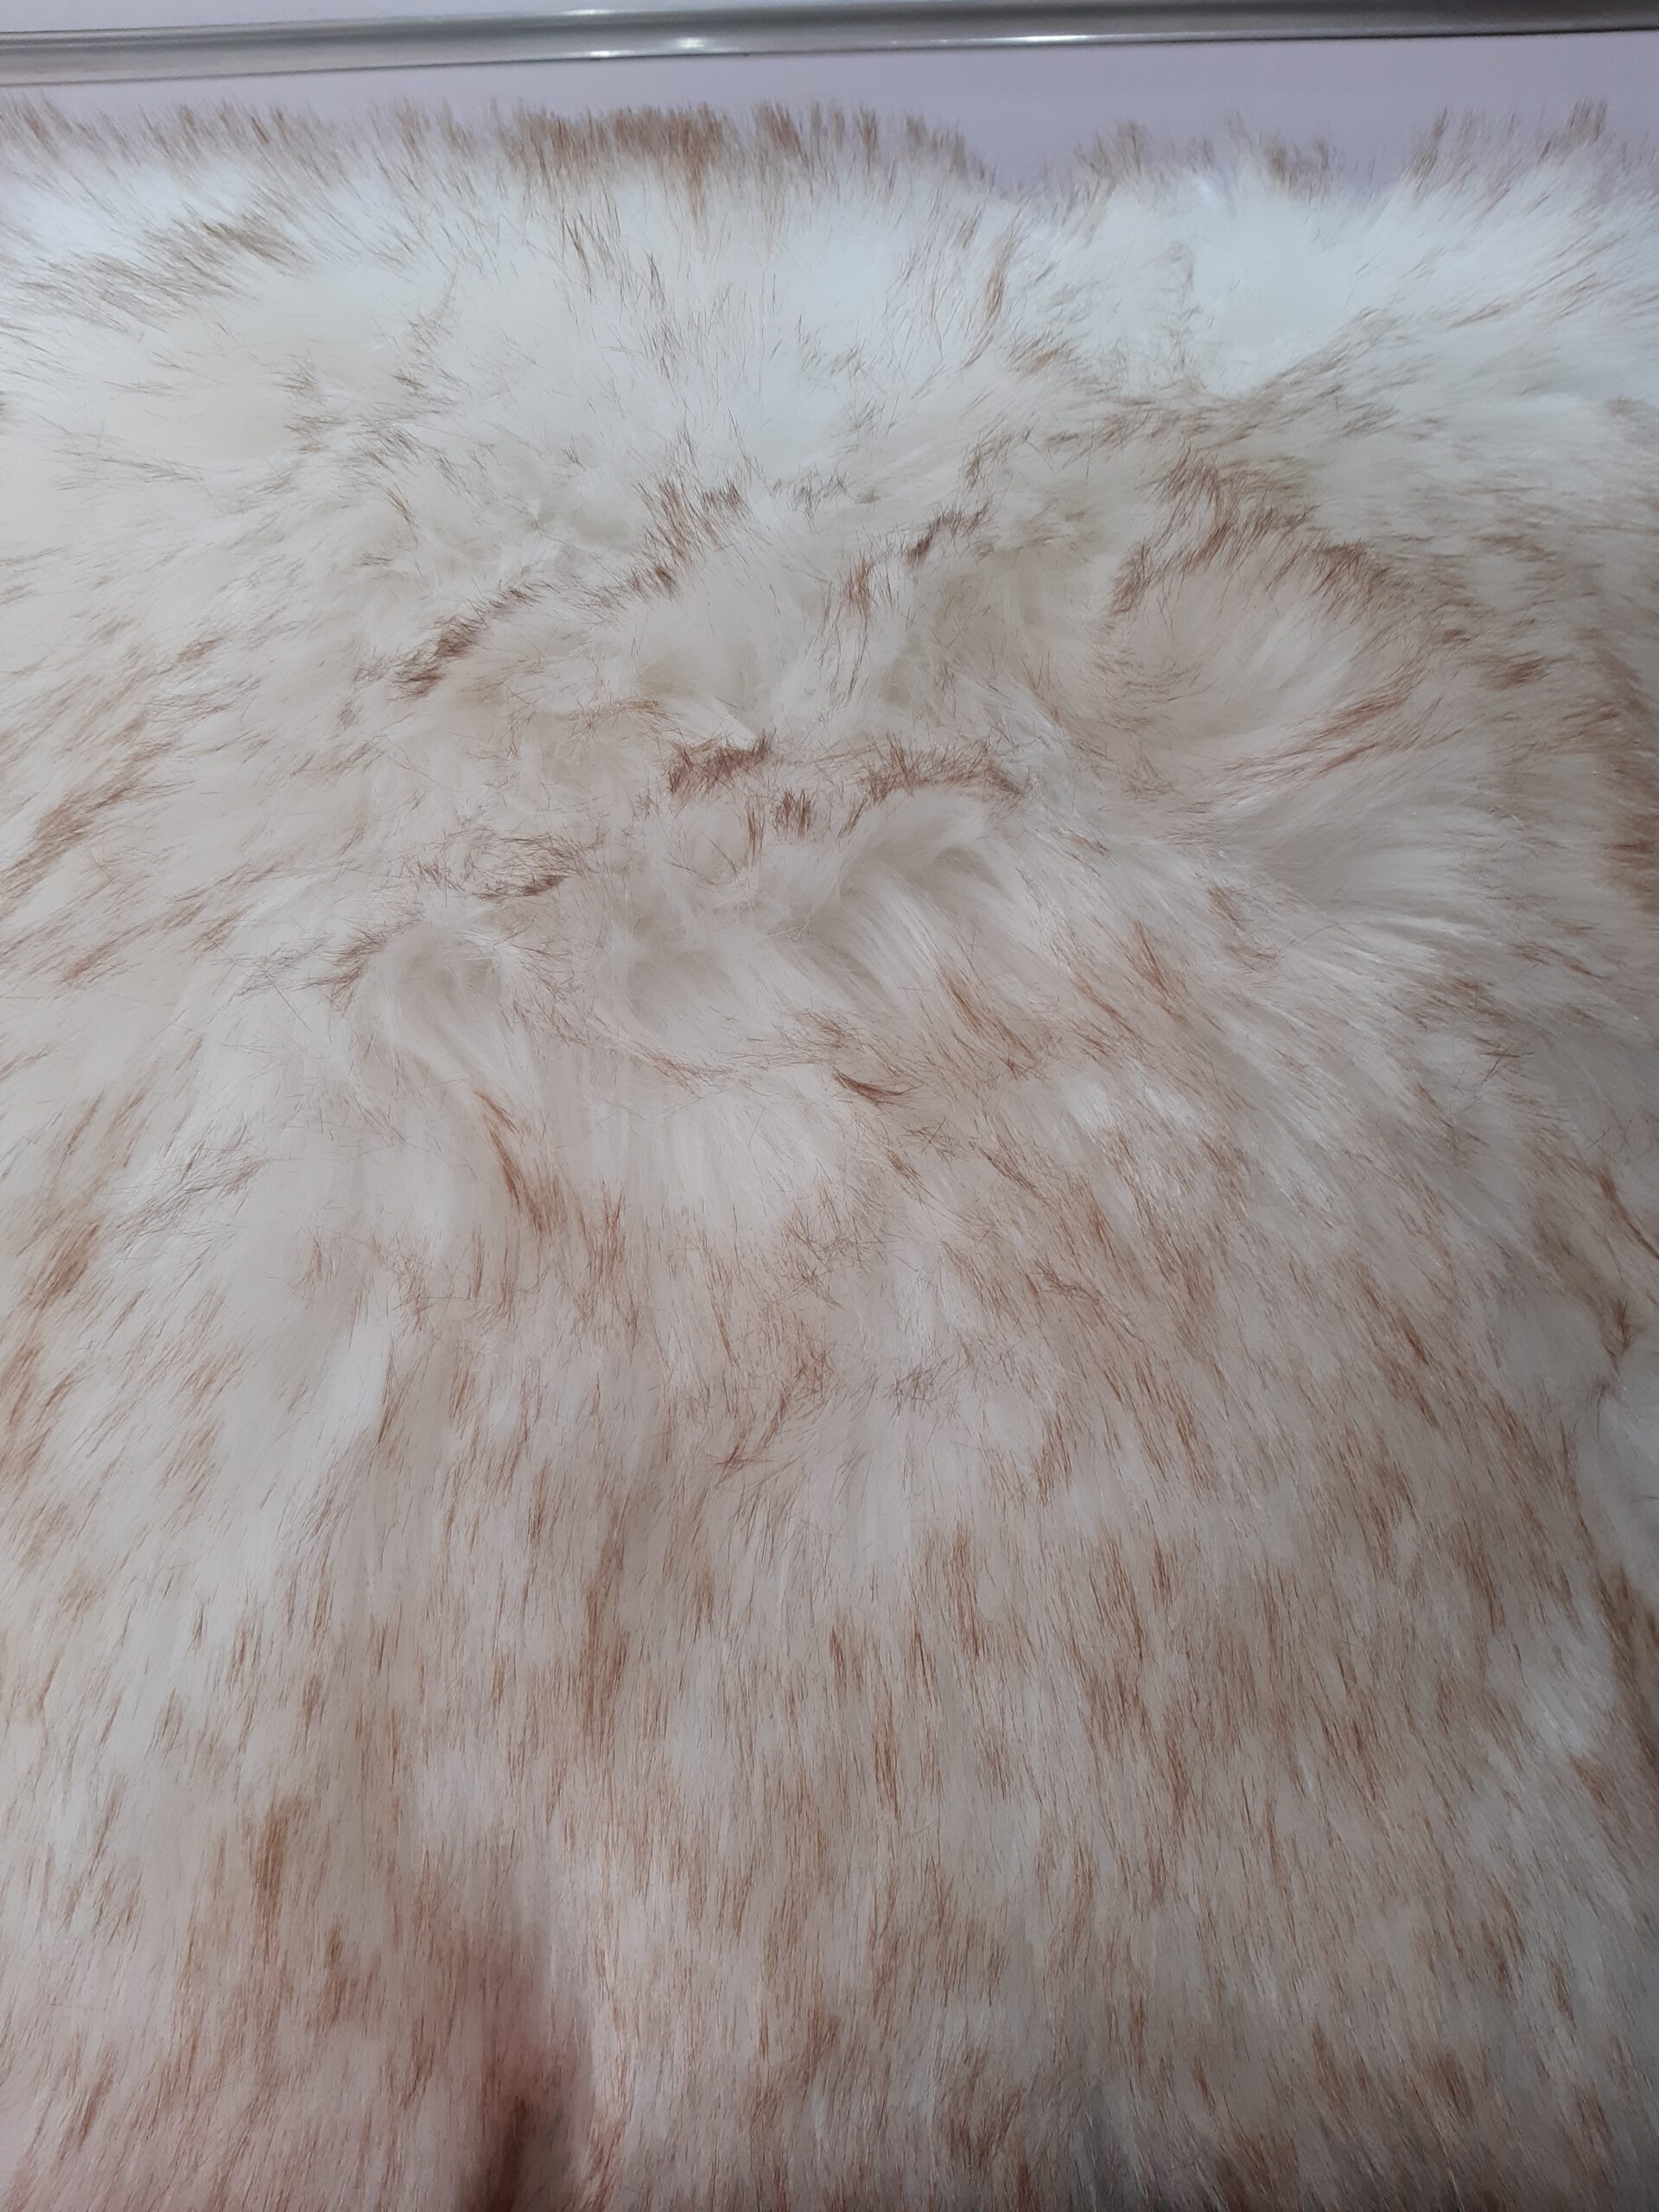 Fluffy Cushions - 𝐊𝐉 𝐋𝐈𝐅𝐄𝐒𝐓𝐘𝐋𝐄 𝐇𝐔𝐁